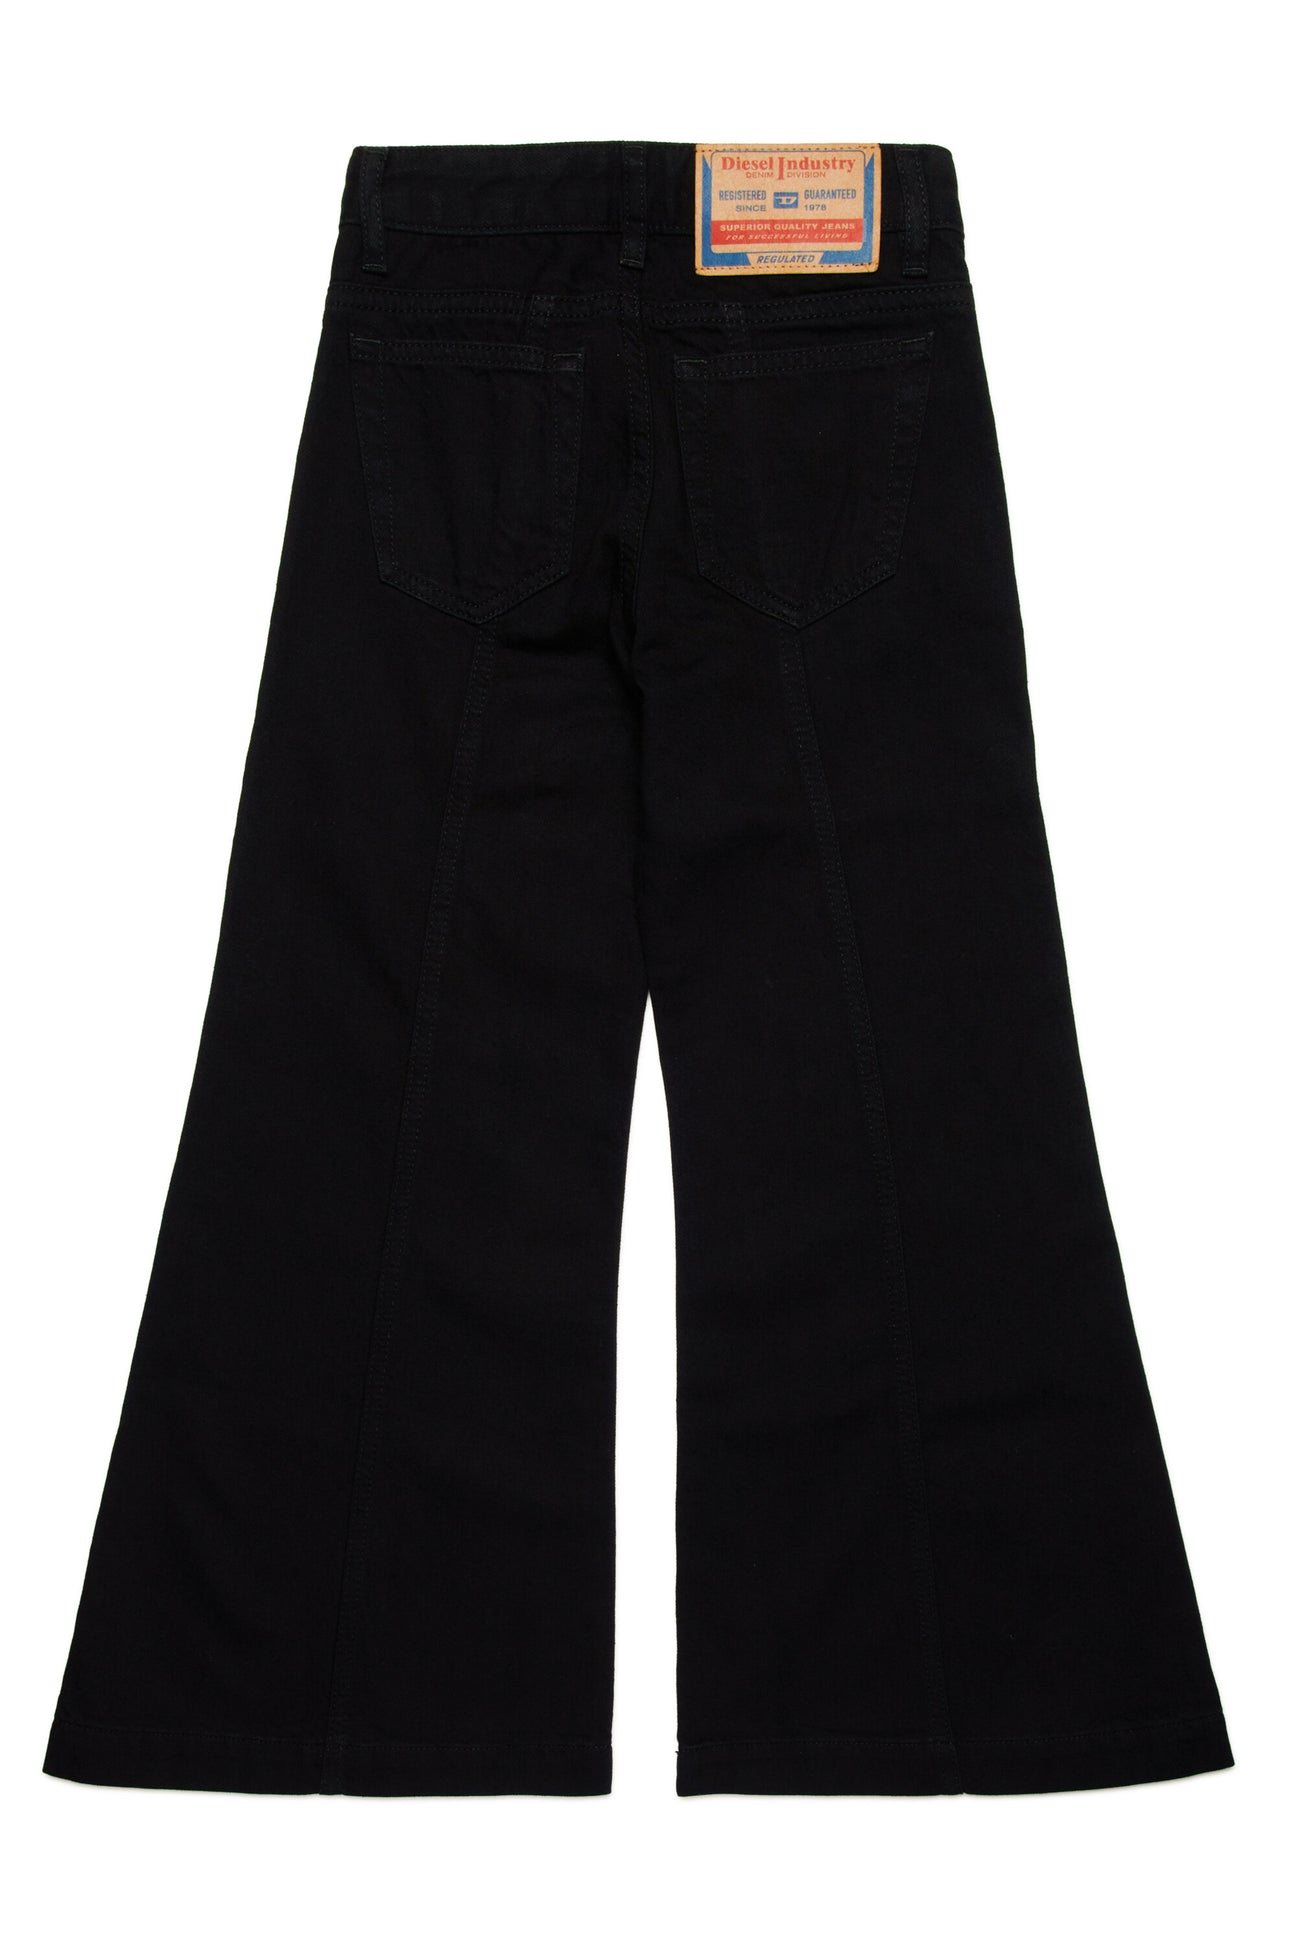 Black flare jeans - D-Akii Black flare jeans - D-Akii